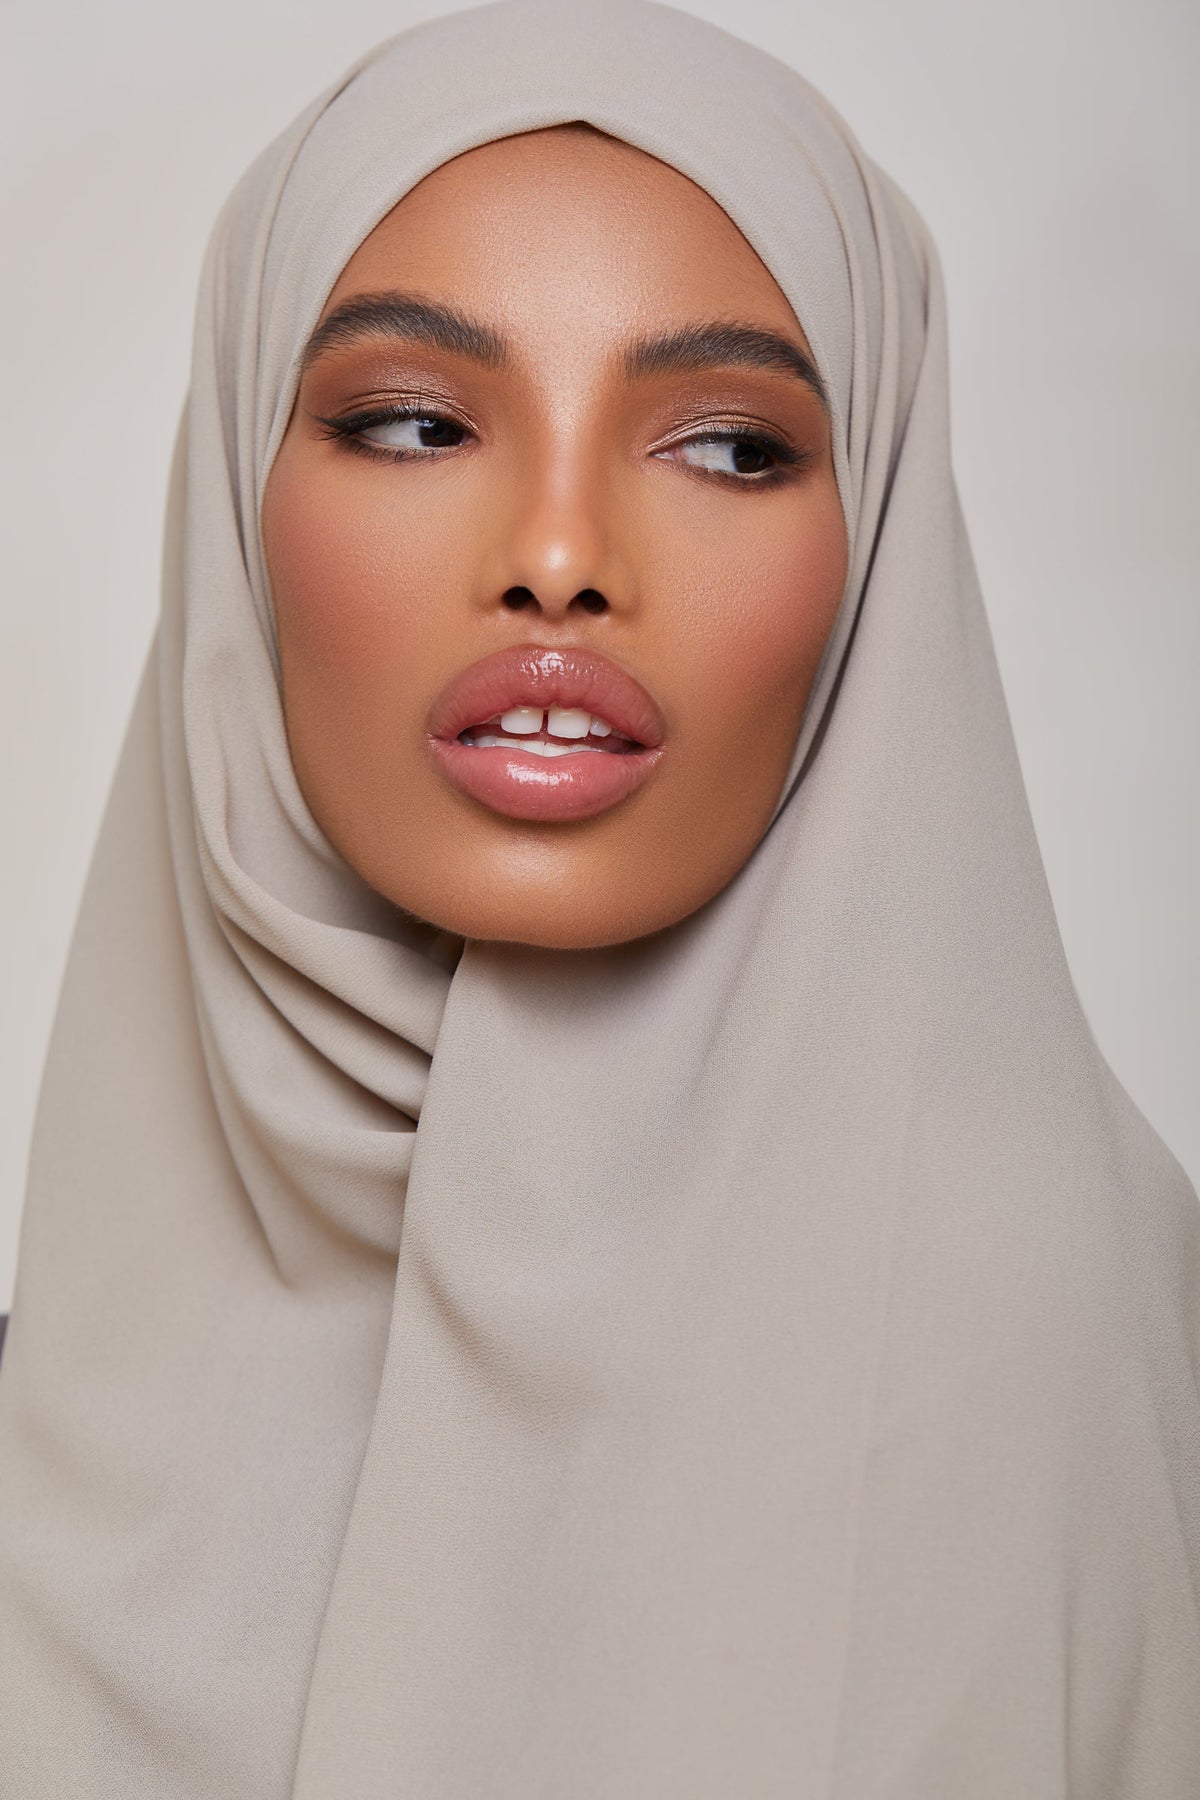 Essential Chiffon Hijab - Fossil Scarves & Shawls epschoolboard 